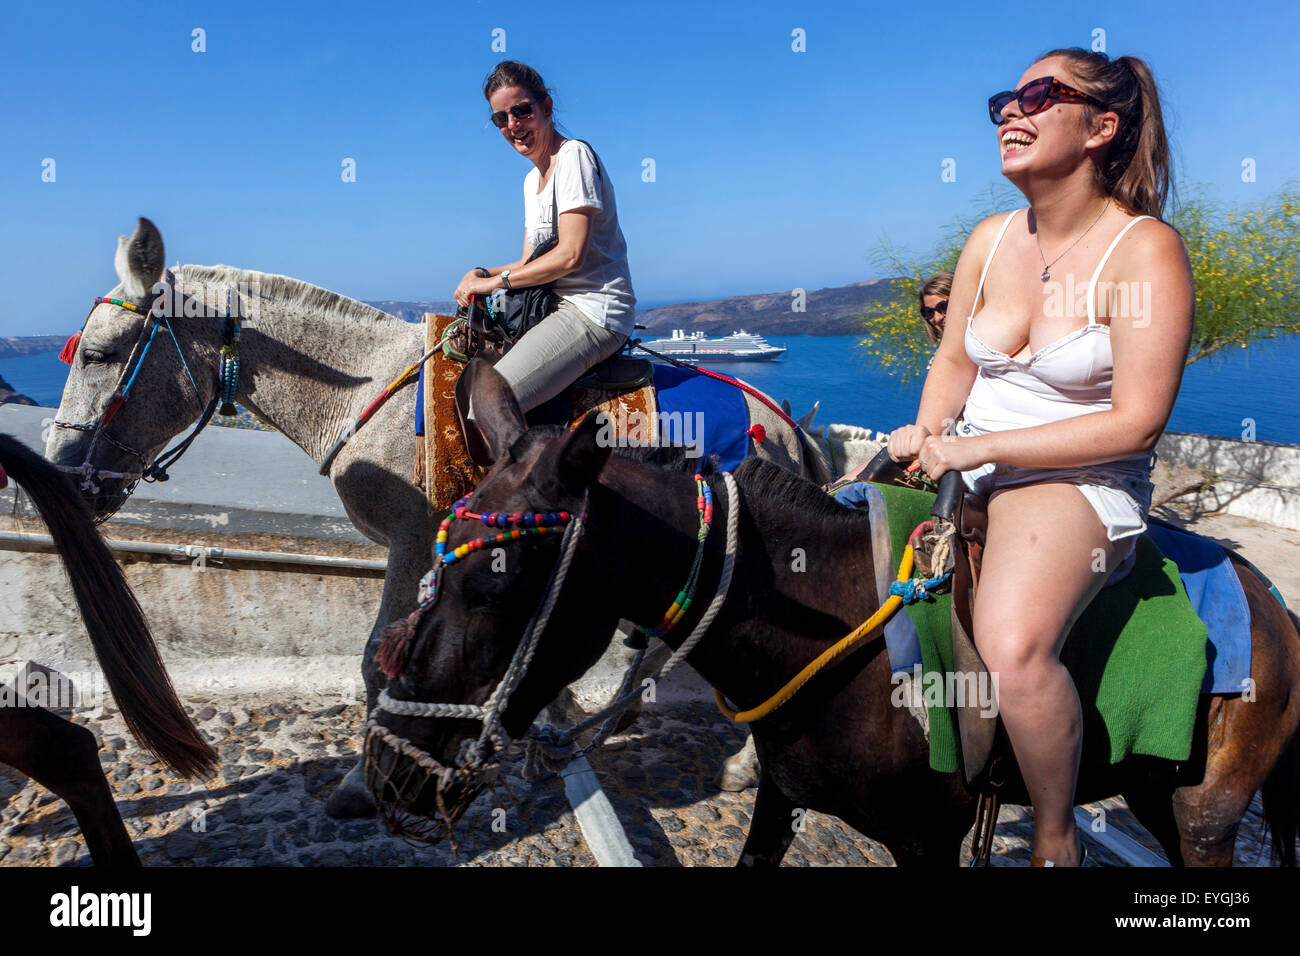 Griechenland Touristen genießen das Leben, Menschen, zwei junge Frauen, die auf Eseln reiten und lachen. Straße, die den Hafen mit der Stadt Thira Santorini in Griechenland verbindet Stockfoto